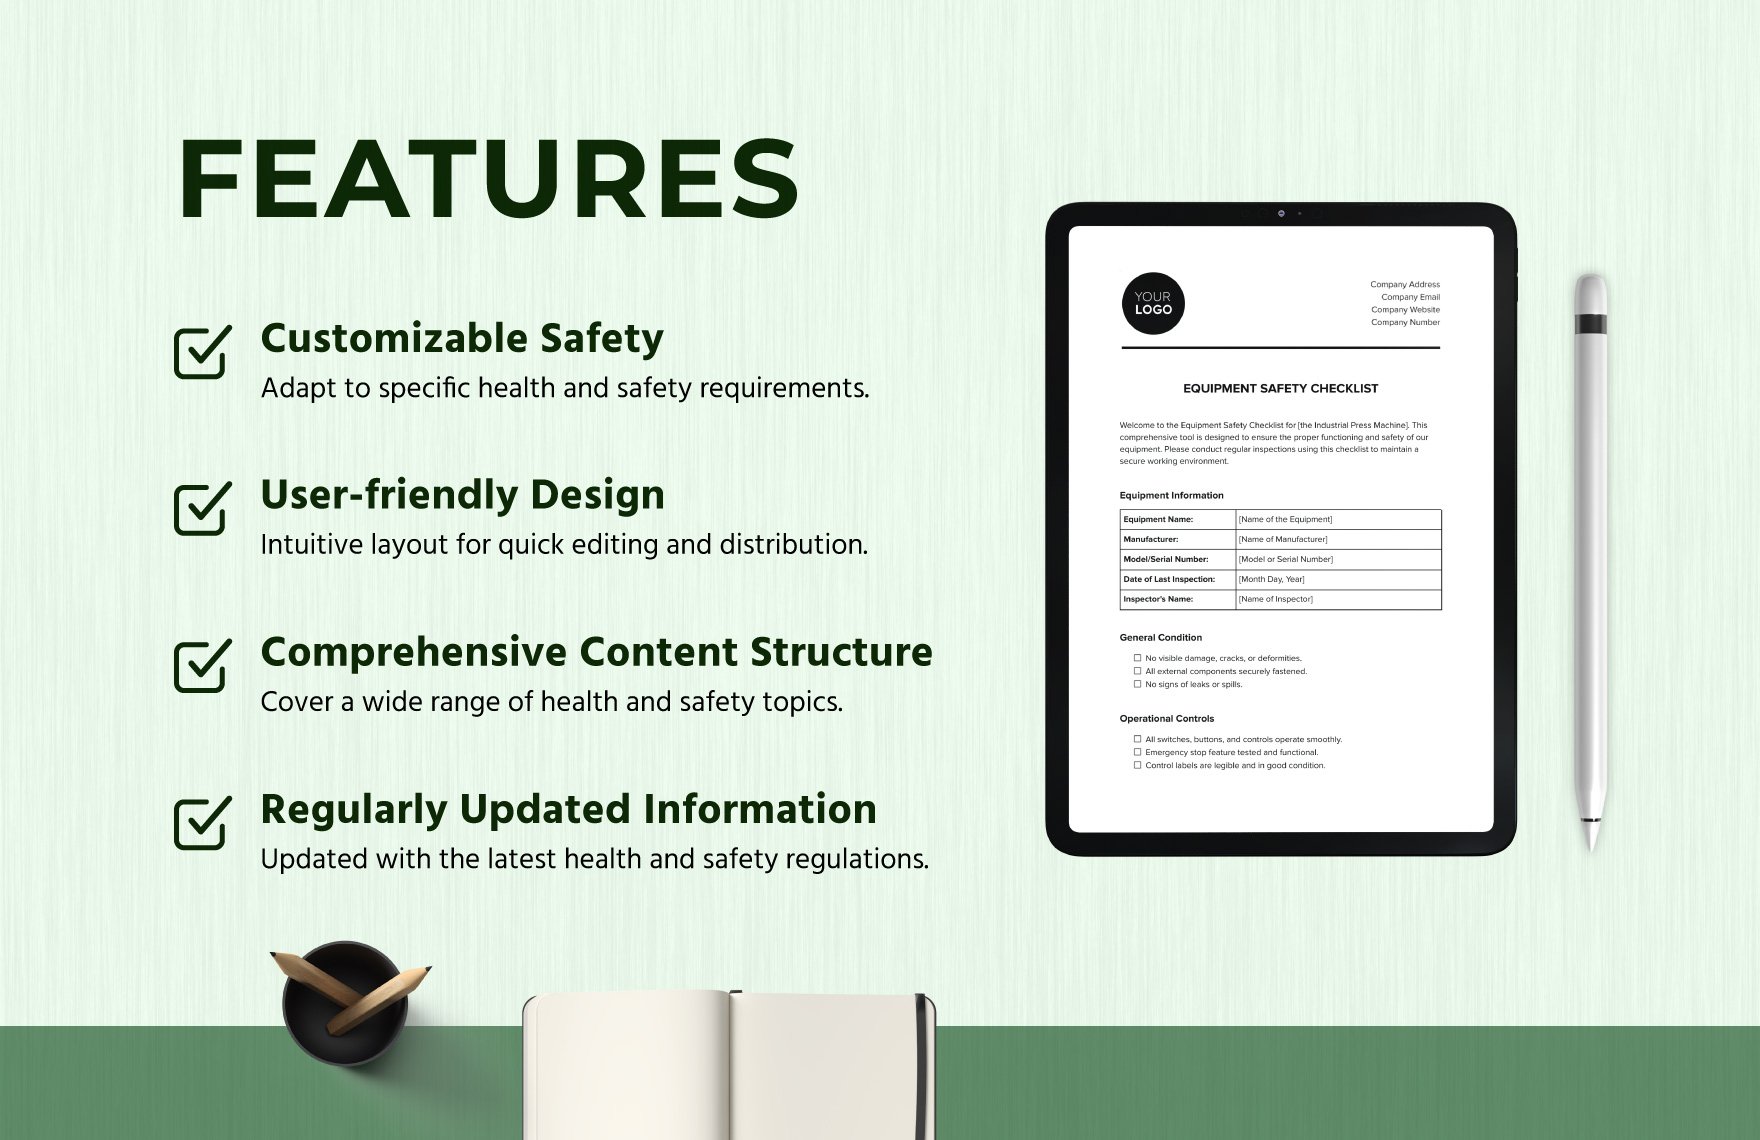 Equipment Safety Checklist Template